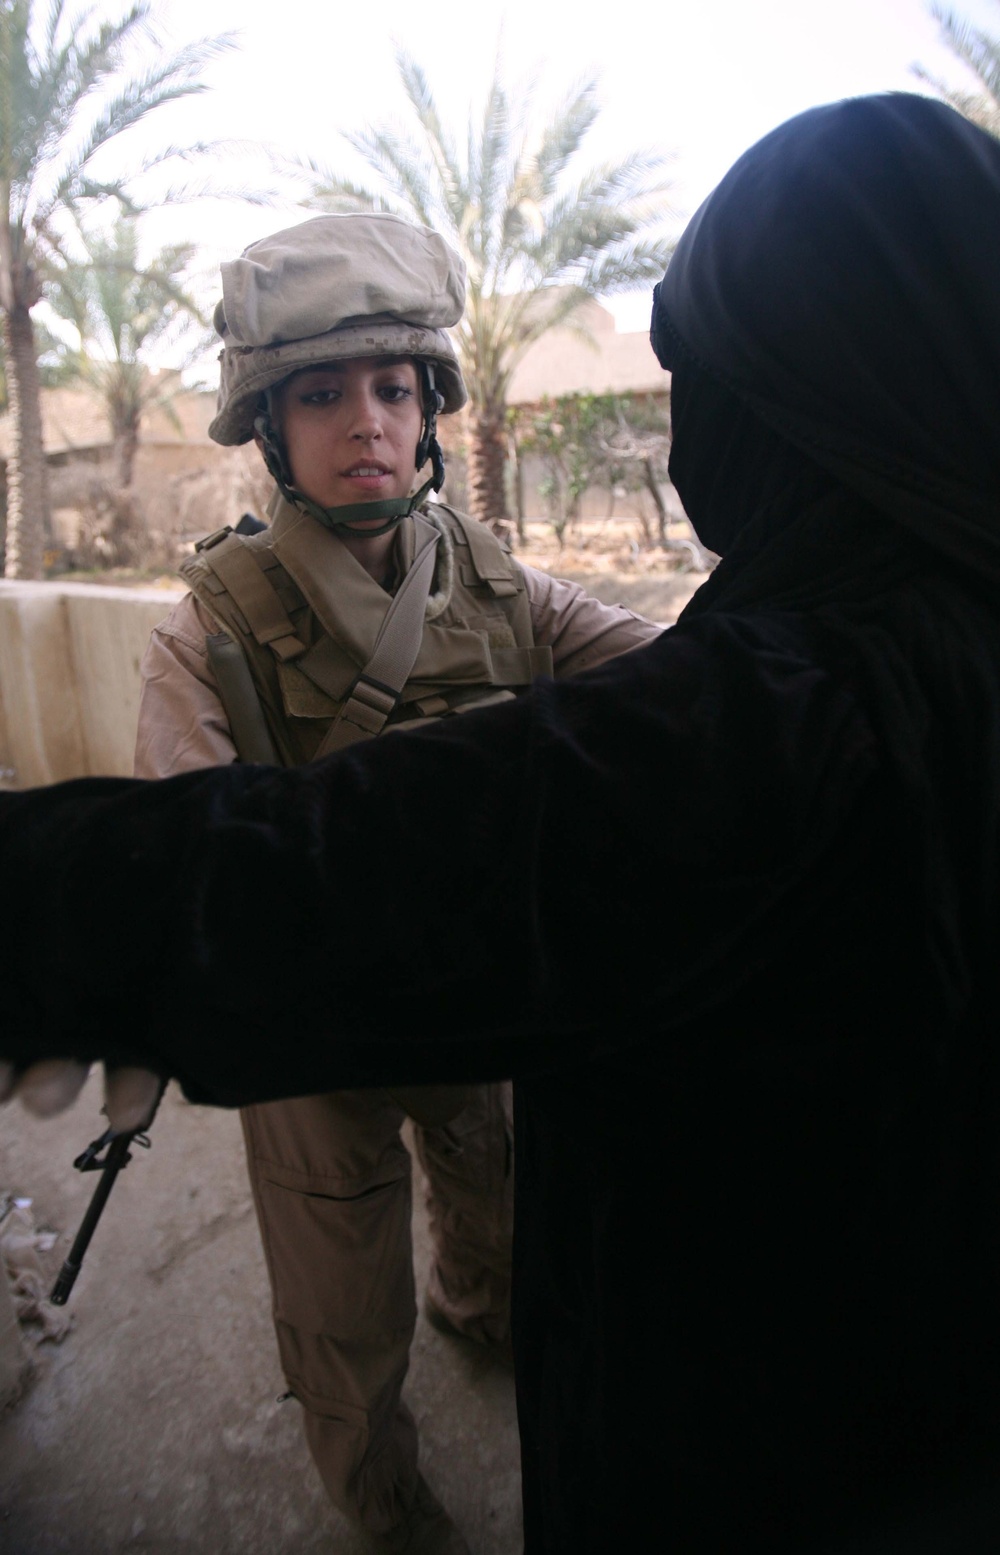 Iraqi Women's Engagement